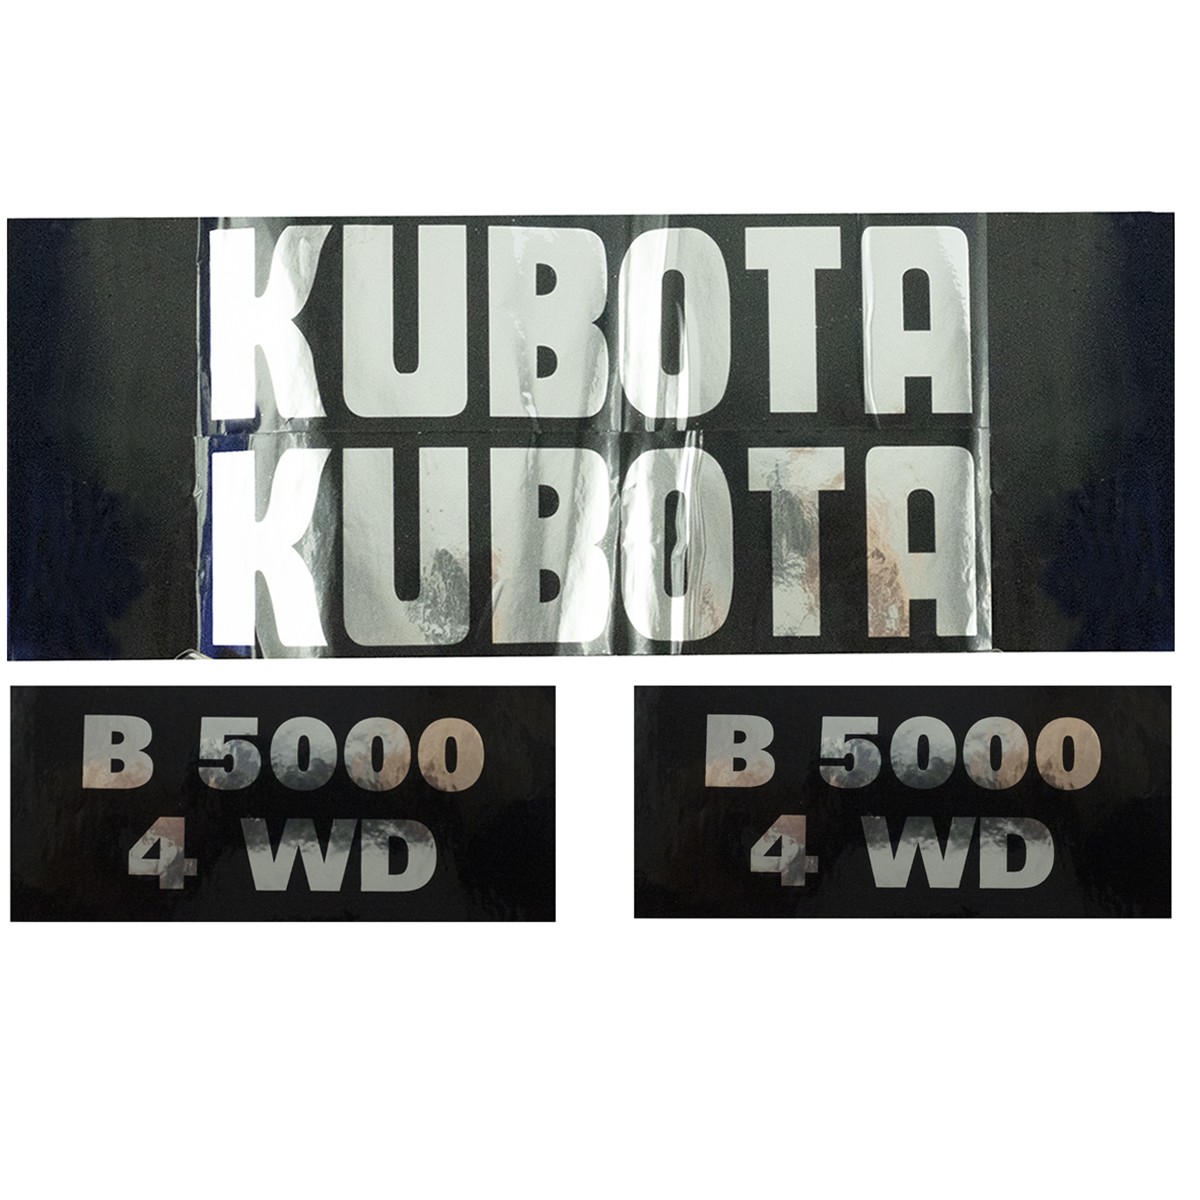 Kubota B5000 4WD pegatinas